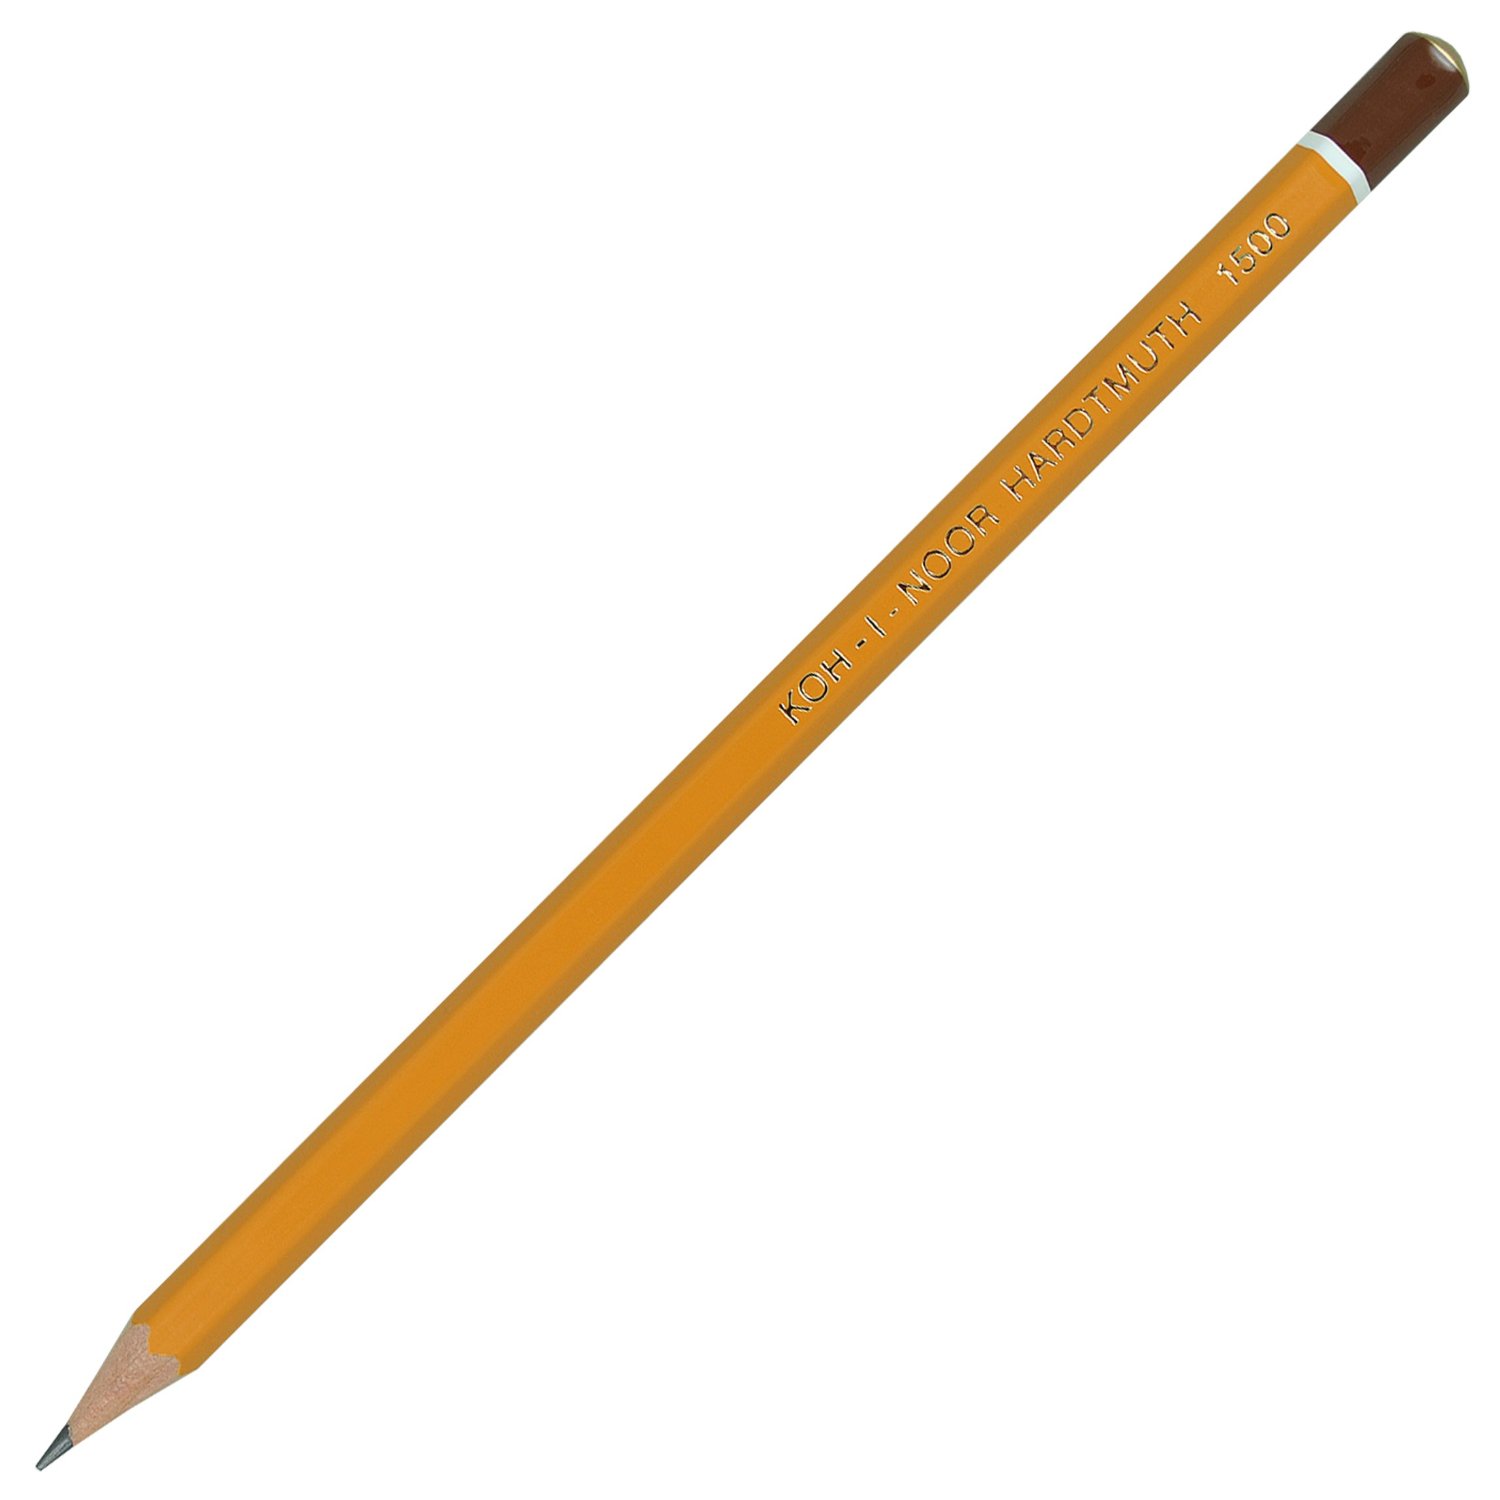 Олівець Koh-I-Noor графітний‚ 3В, загострений, ціна за 1 олівець, упаковка 12 штук 1500.3B